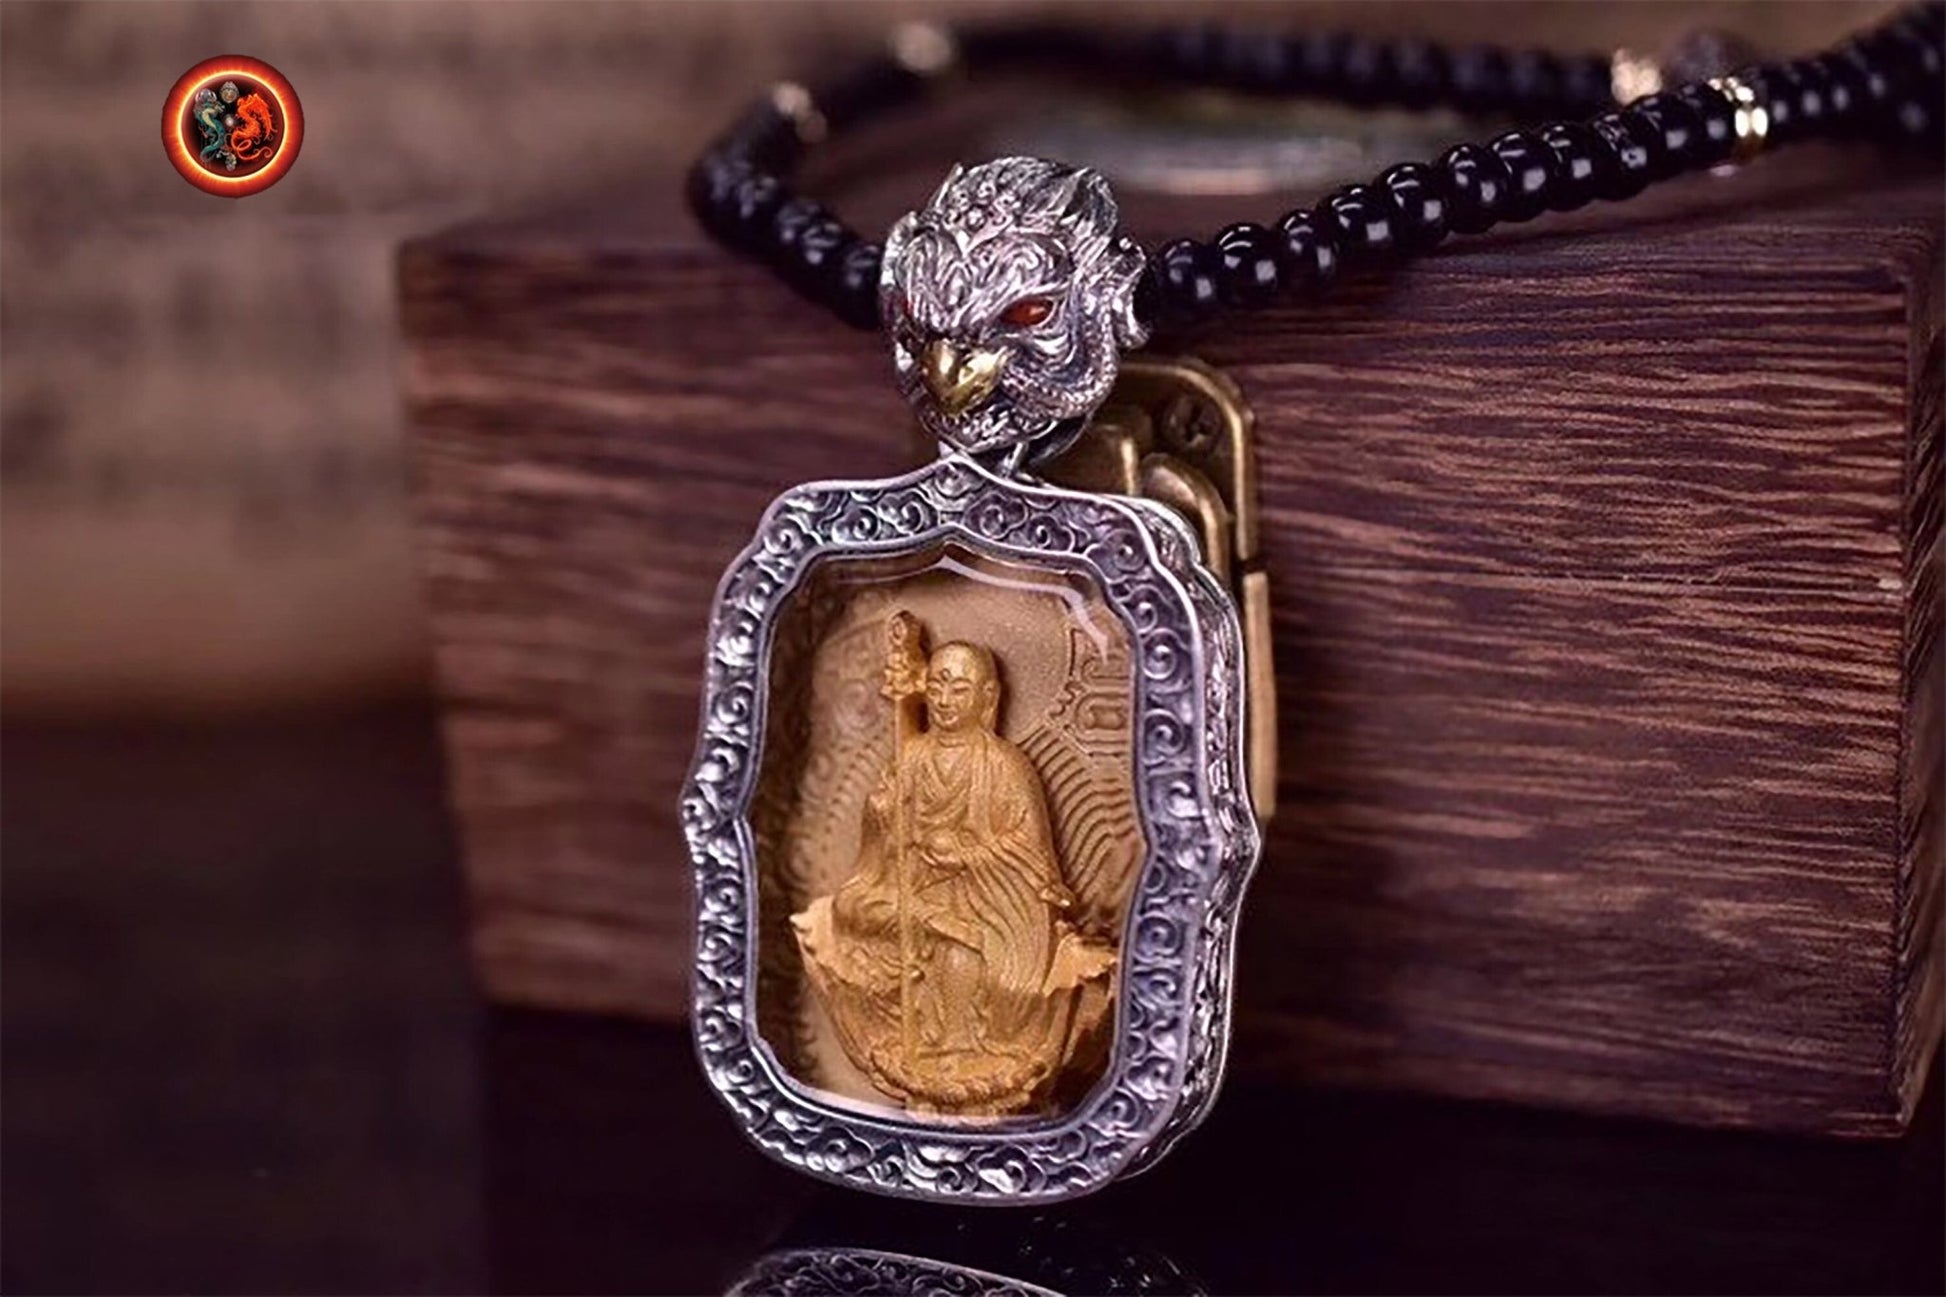 pendentif amulette de protection bouddhiste Bouddha Dizang/ Jizo mala de prière et méditation 108 perles, argent 925 or 18K bélière Garuda - obsidian dragon